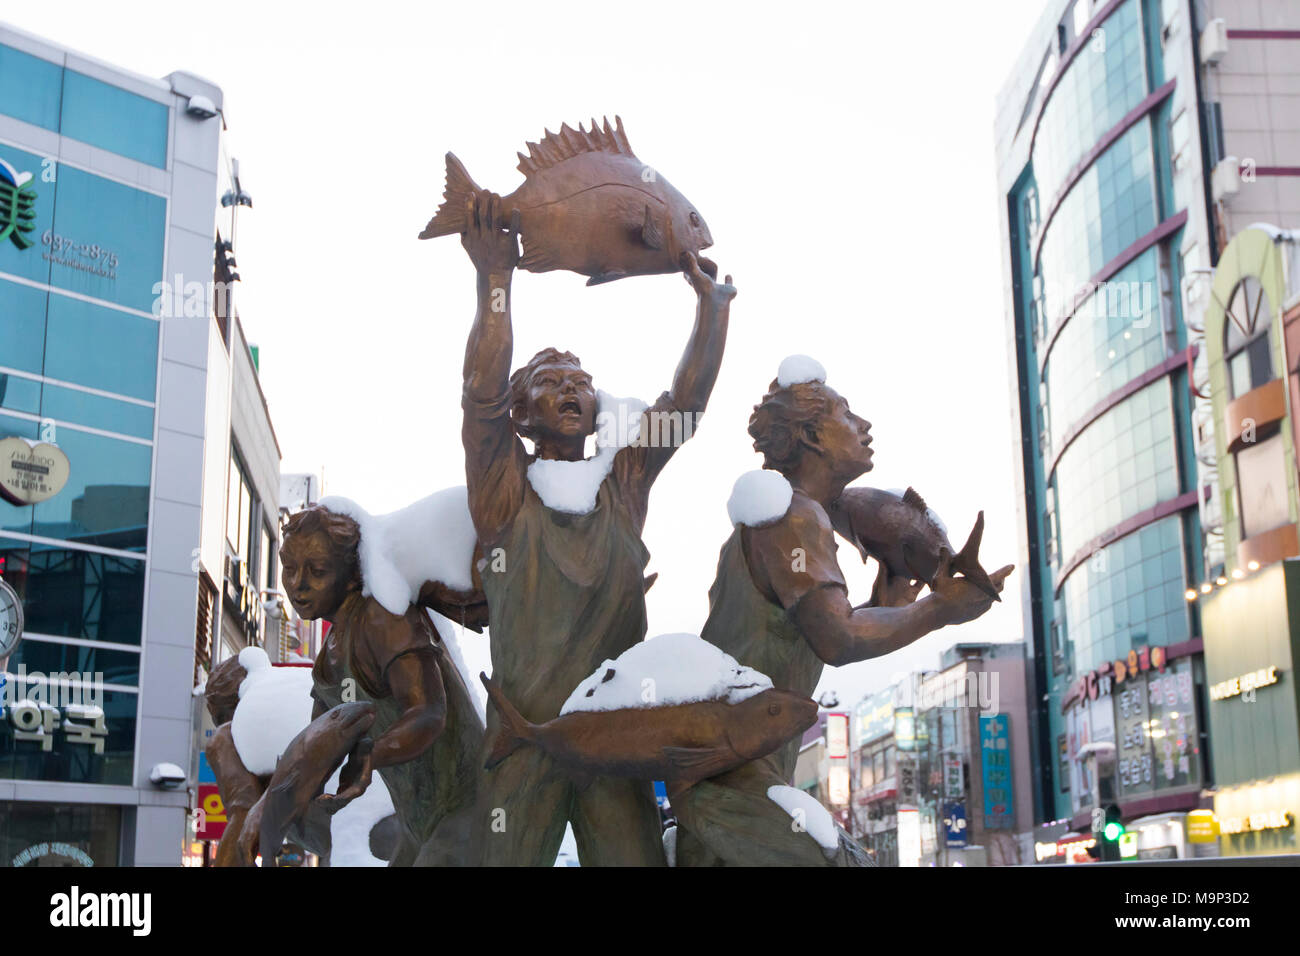 Ein Denkmal für die Fischer im Zentrum von Sokcho, eine lebendige Hafenstadt zwischen den Bergen und dem Meer der Koreanischen region Gangwon-do. In der Nähe Pyeongchang wird Gastgeber der Olympischen Winterspiele im Februar 2018. Stockfoto